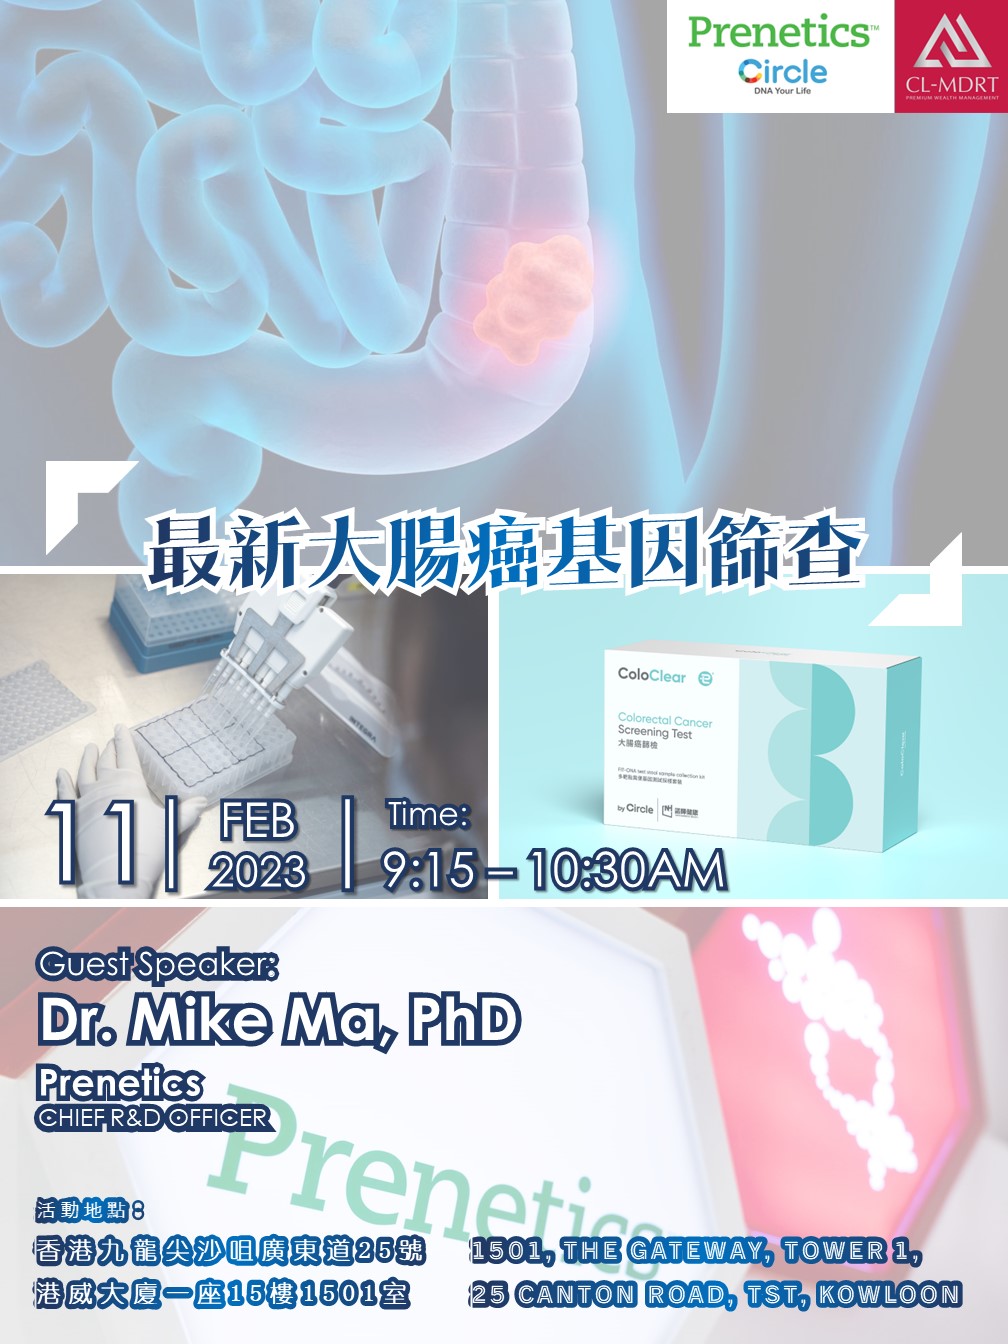 Feb 11 - Prenetics - Dr Mike Ma, PhD.jpg